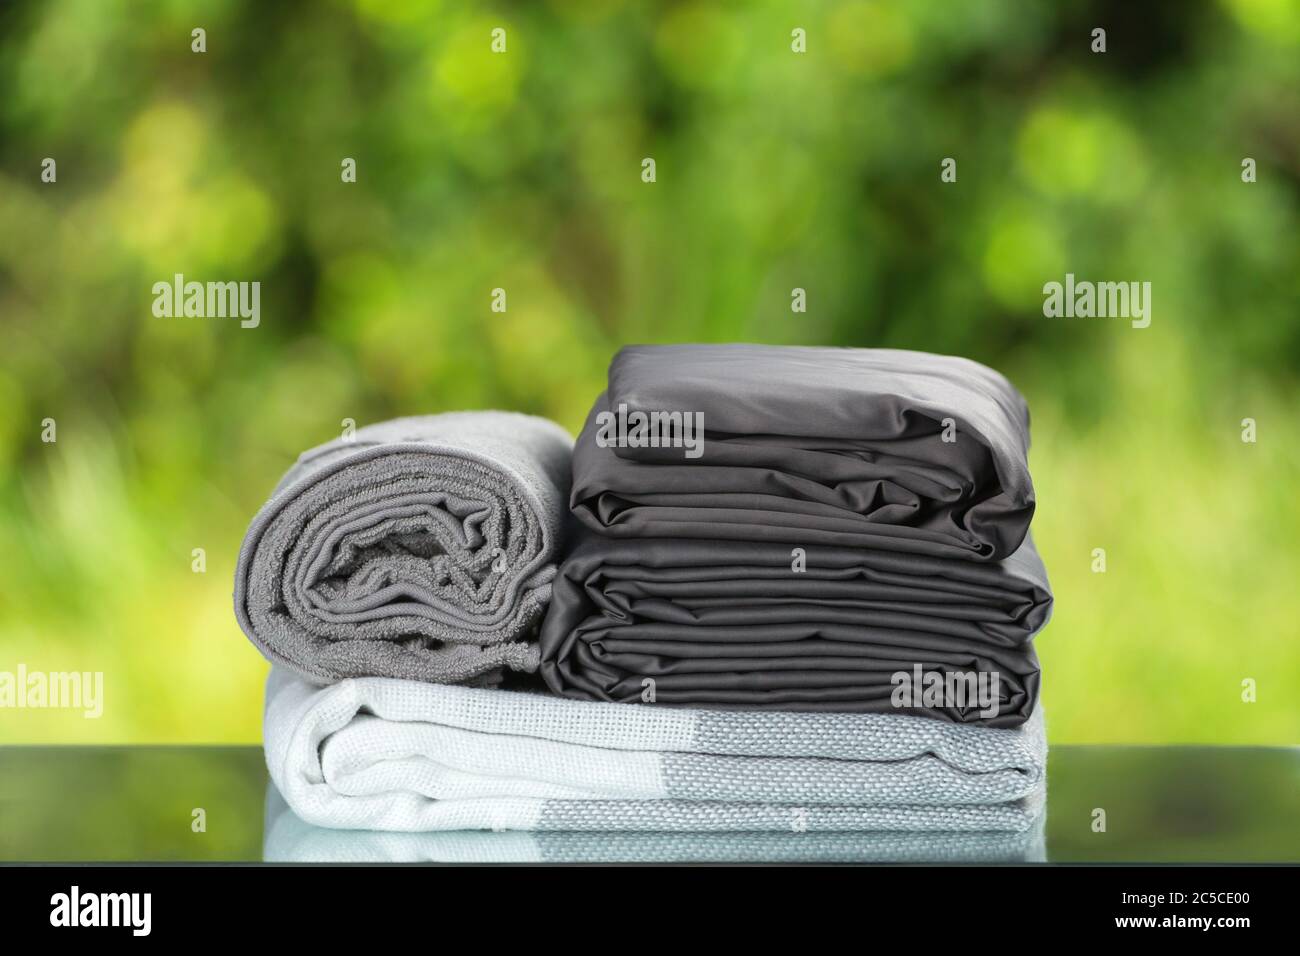 Stapel gefalteter Bettwäsche. Einfarbig grau gradient kariert Handtuch Bettlaken Textil auf verwischten Laub Hintergrund gesetzt. Stockfoto